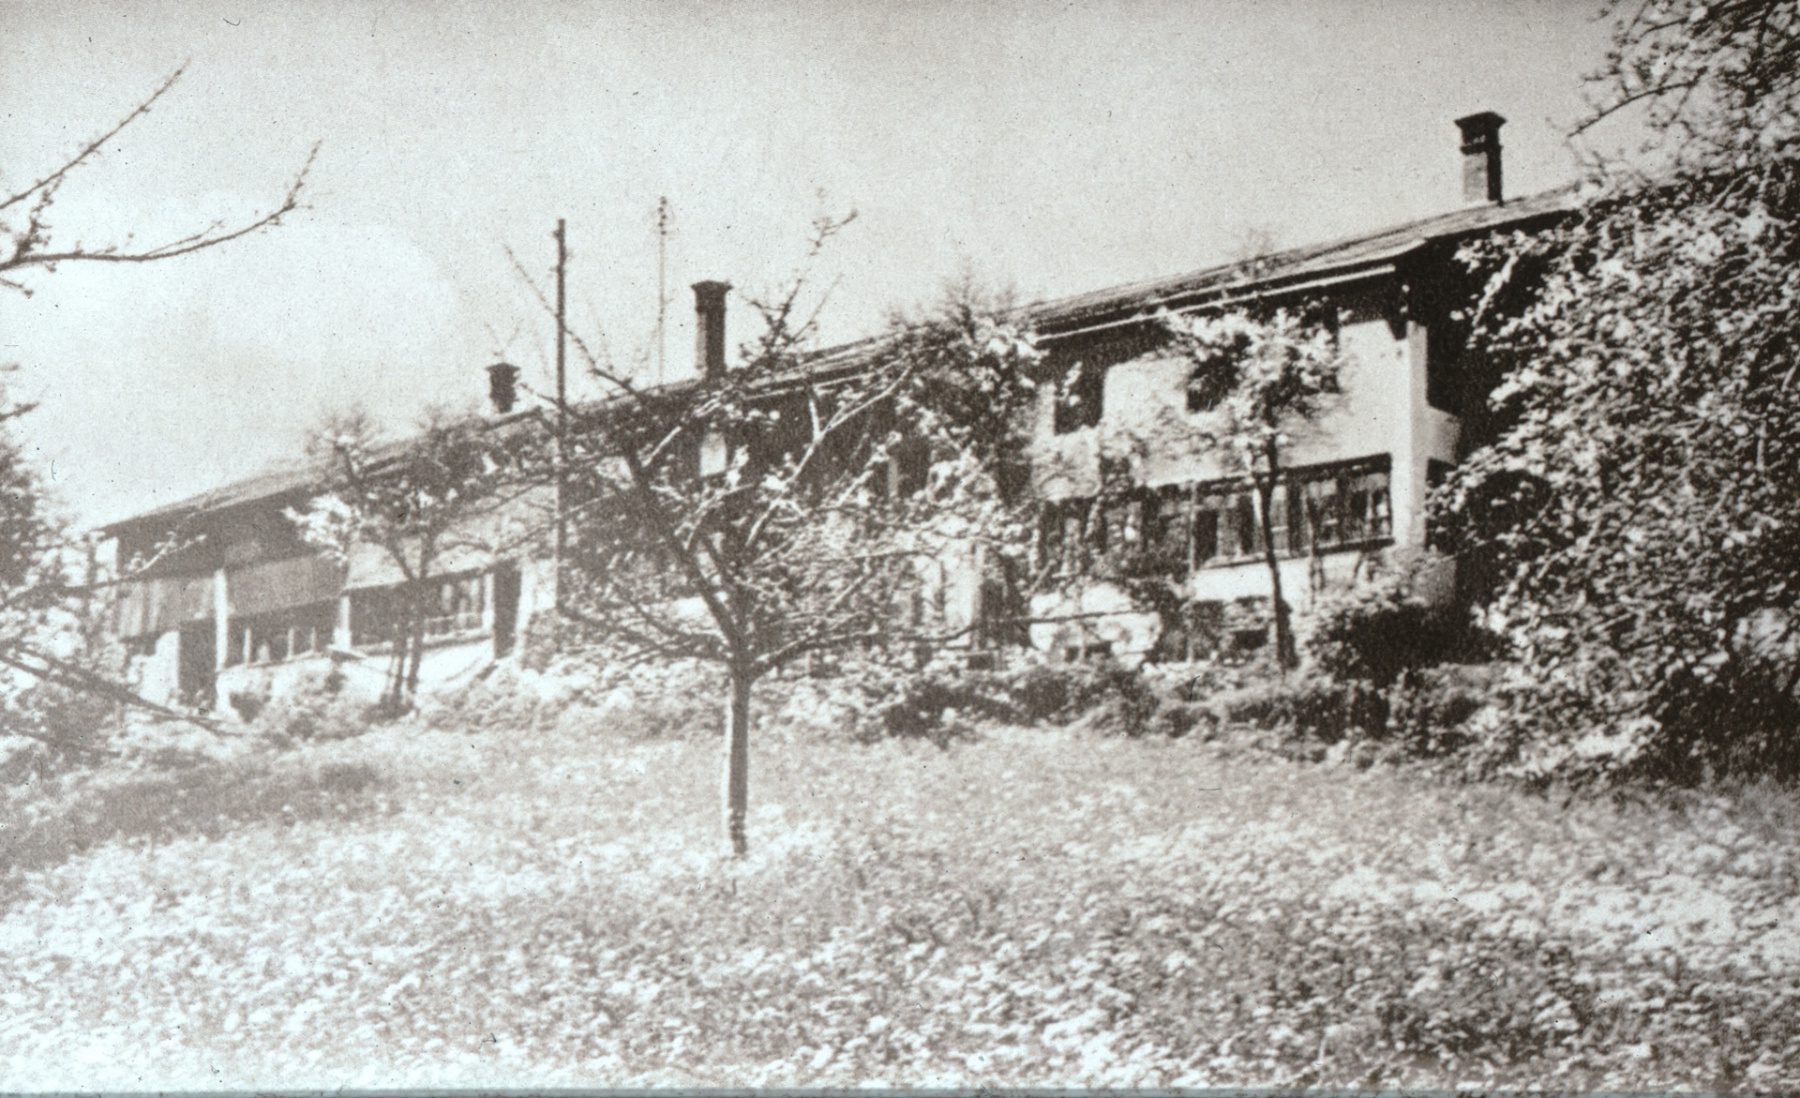 Grosser Flarz in Ferenwaltsberg. am 21. Dez. 1951 morgens 3 Uhr total abgebrannt (3 Häuser und eine Scheune), 11 Personen obdachlos (aus Tagebuch von Albert Egli-Zollinger, Kleinbäretswil.